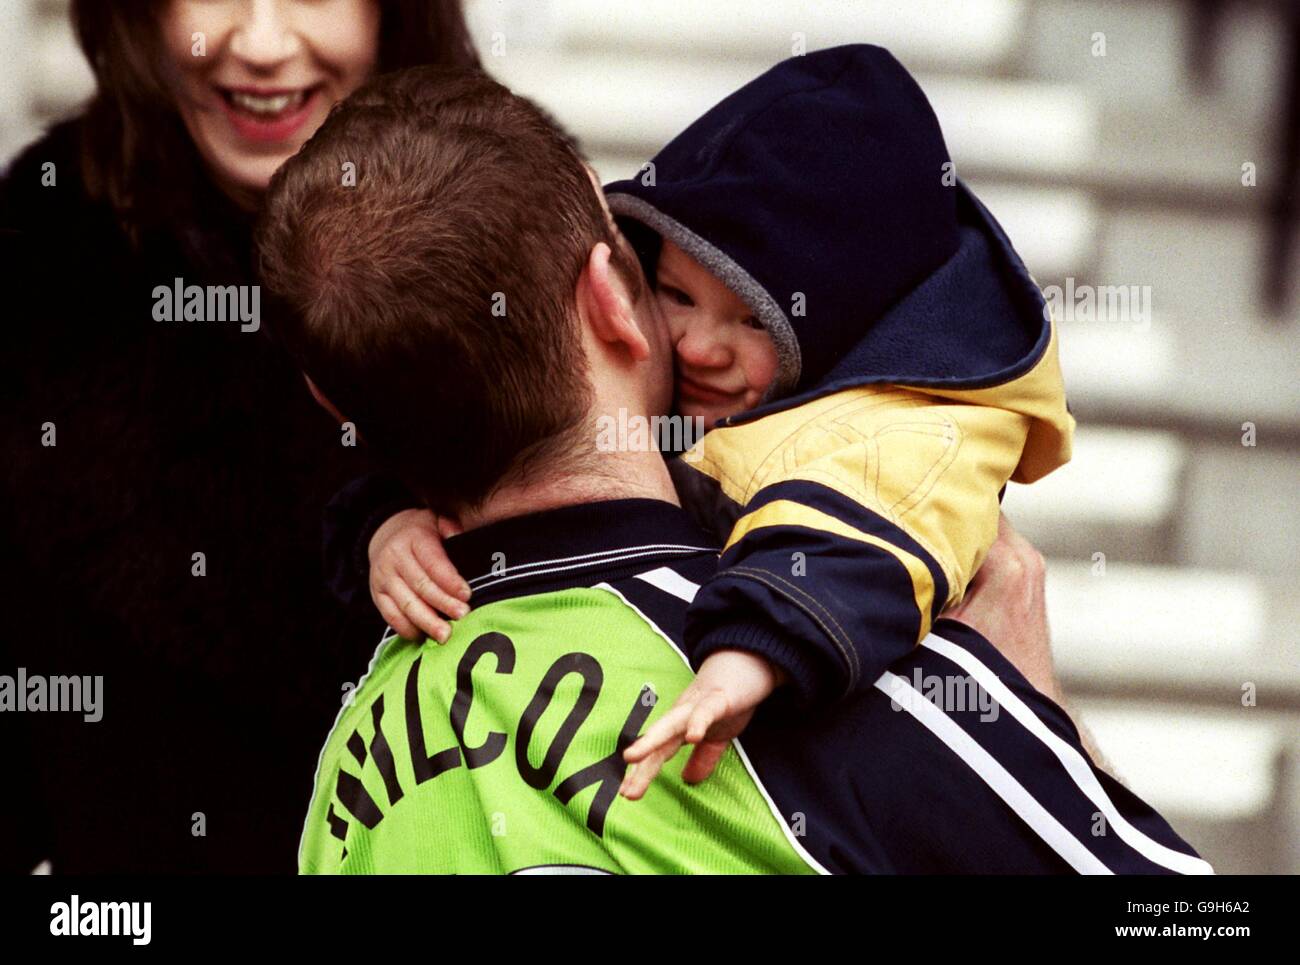 Pas de chance papa. Russ Wilcox, de Scunthorpe United, obtient un hug de consolation du fils Daniel, 14 mois, après la défaite de Bolton Wanderers Banque D'Images